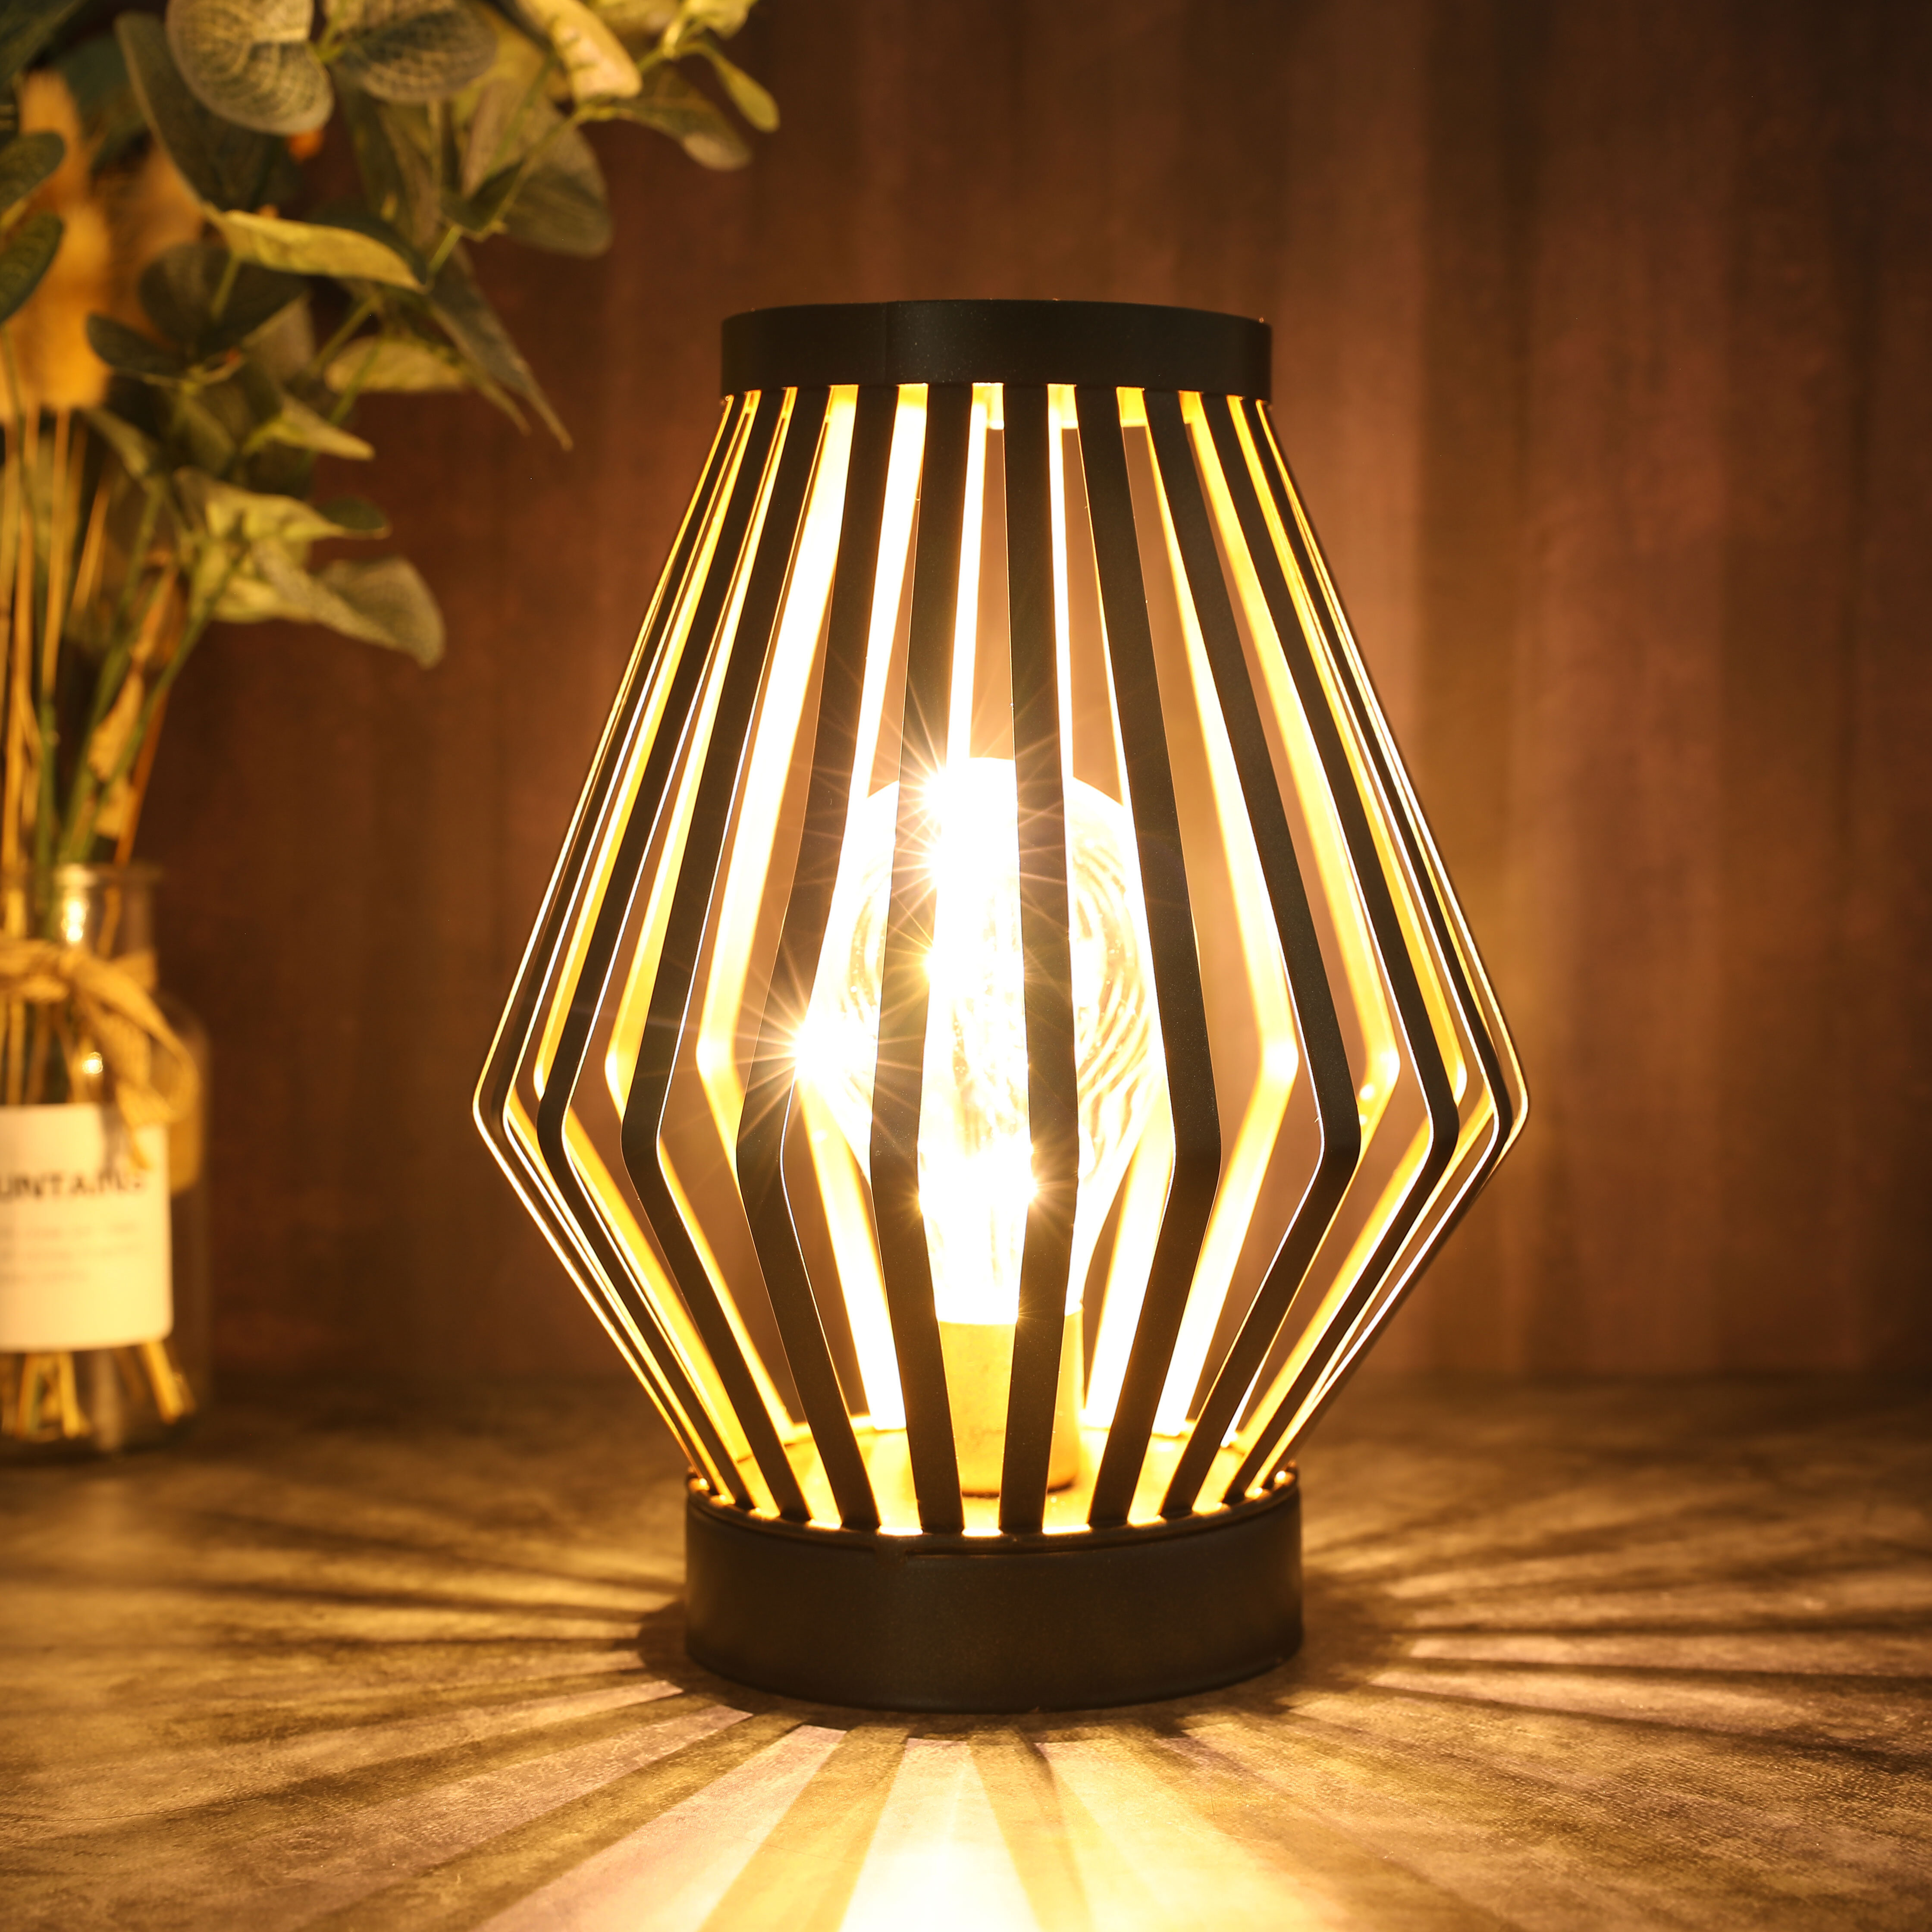 4 LED Battery Antique Vintage Bulb Lantern Hanging or Table Lamp Indoor Garden 